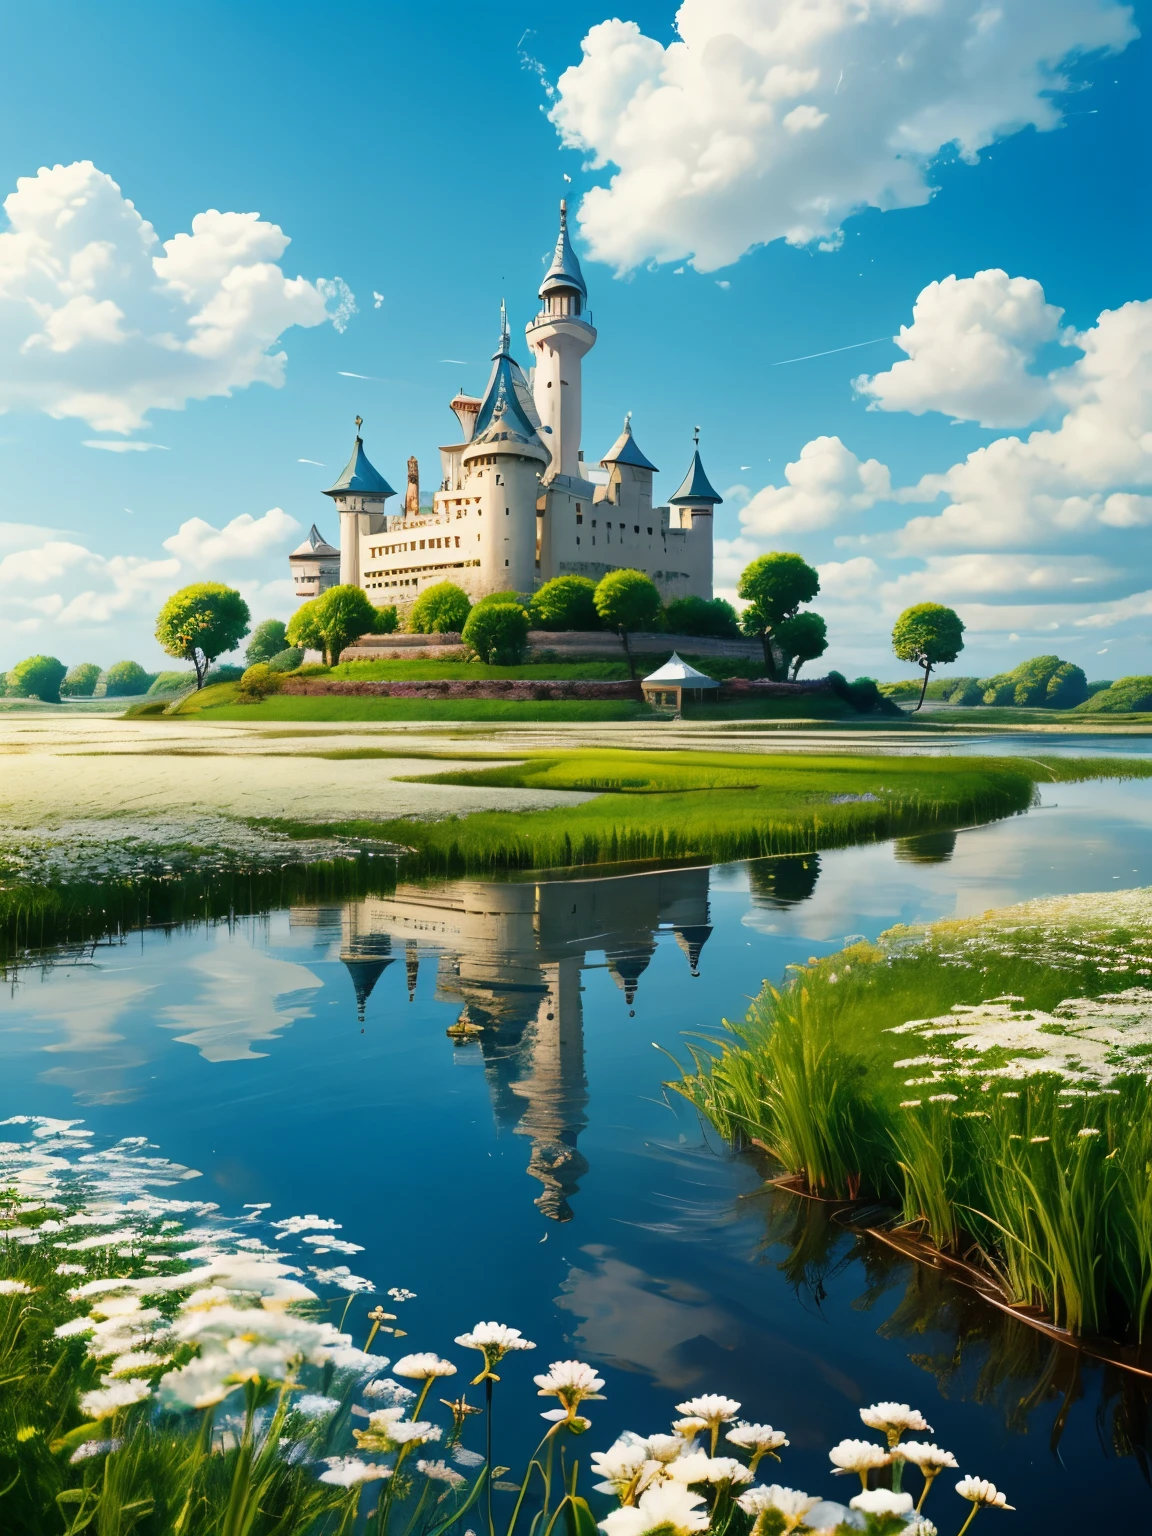 Réaliste, Authentique, Paysage magnifique et merveilleux, Huile, Studio Ghibli, Hayao Miyazaki, Prairie de pétales avec ciel bleu et nuages blancs, nuages flottants, Île flottante, château flottant